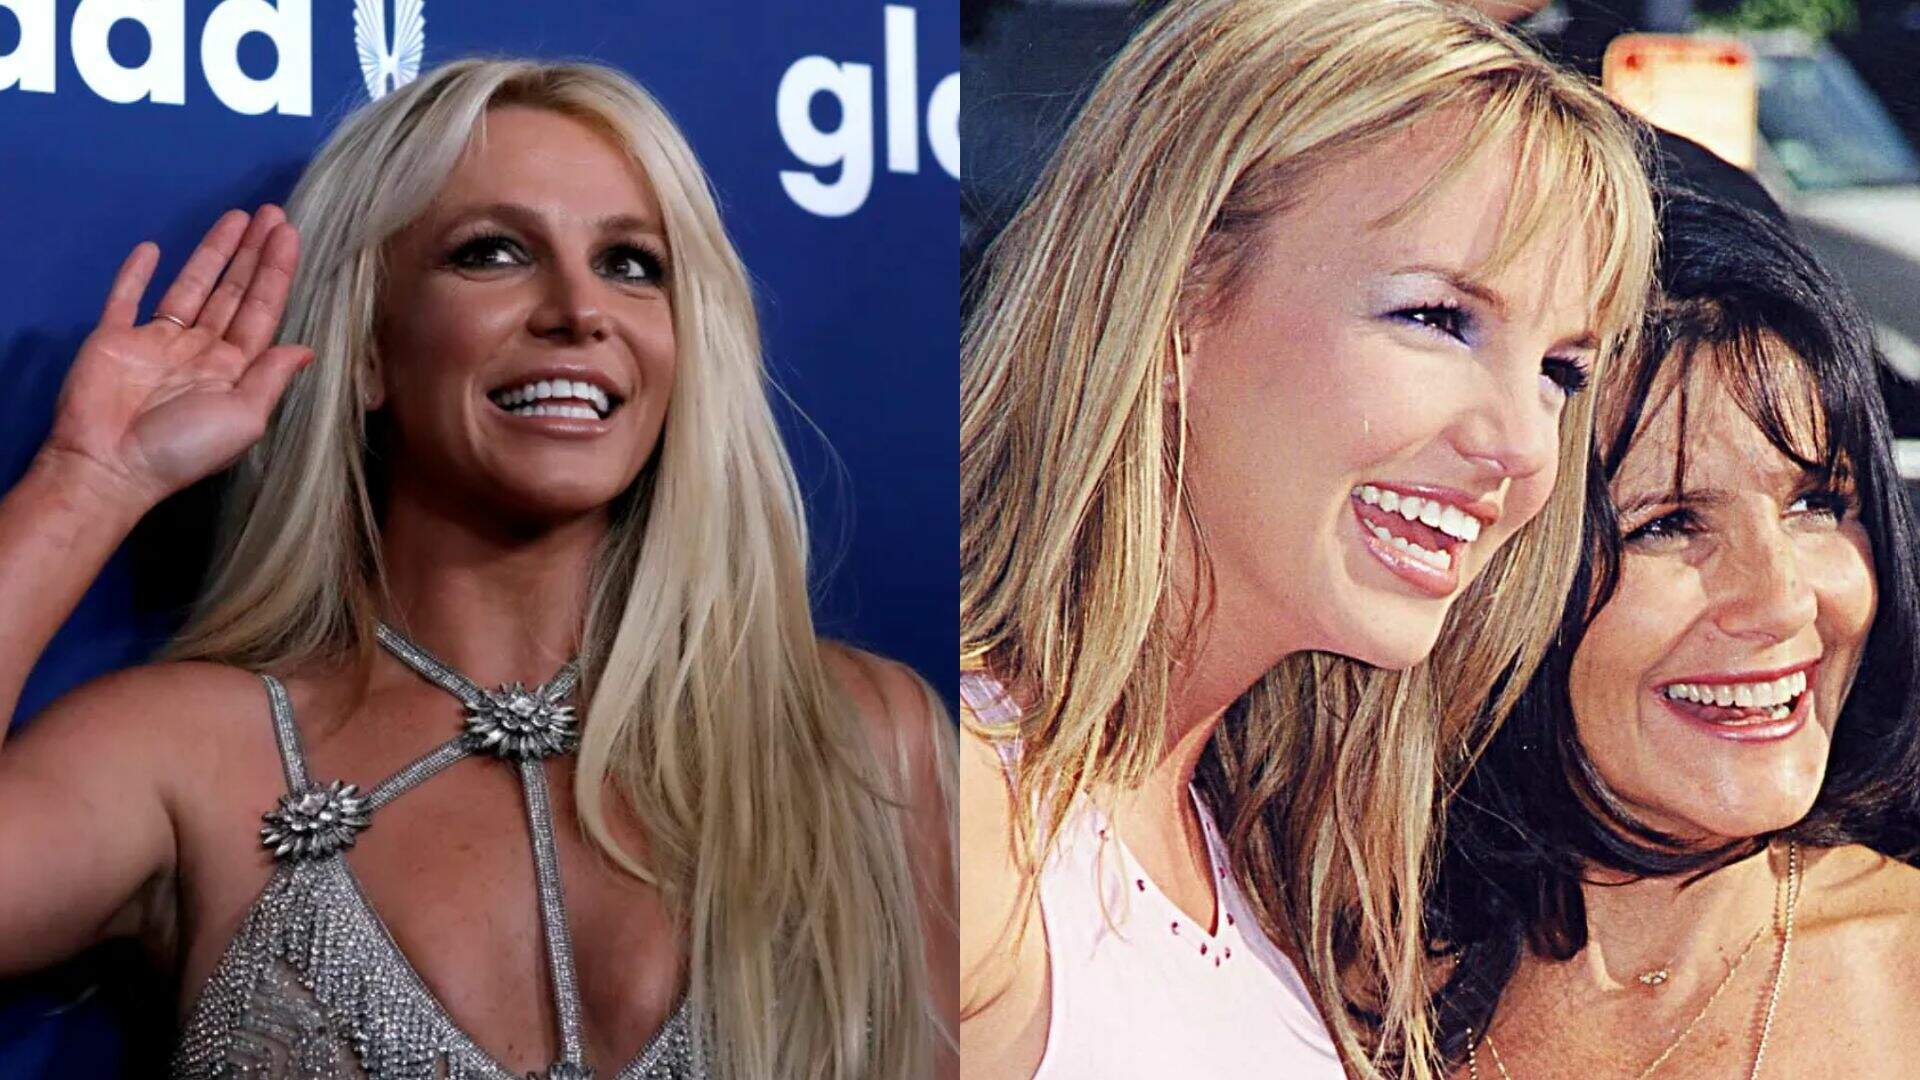 Afastada da mãe há 14 anos, Britney Spears revela reencontro inesperado e explica situação - Metropolitana FM